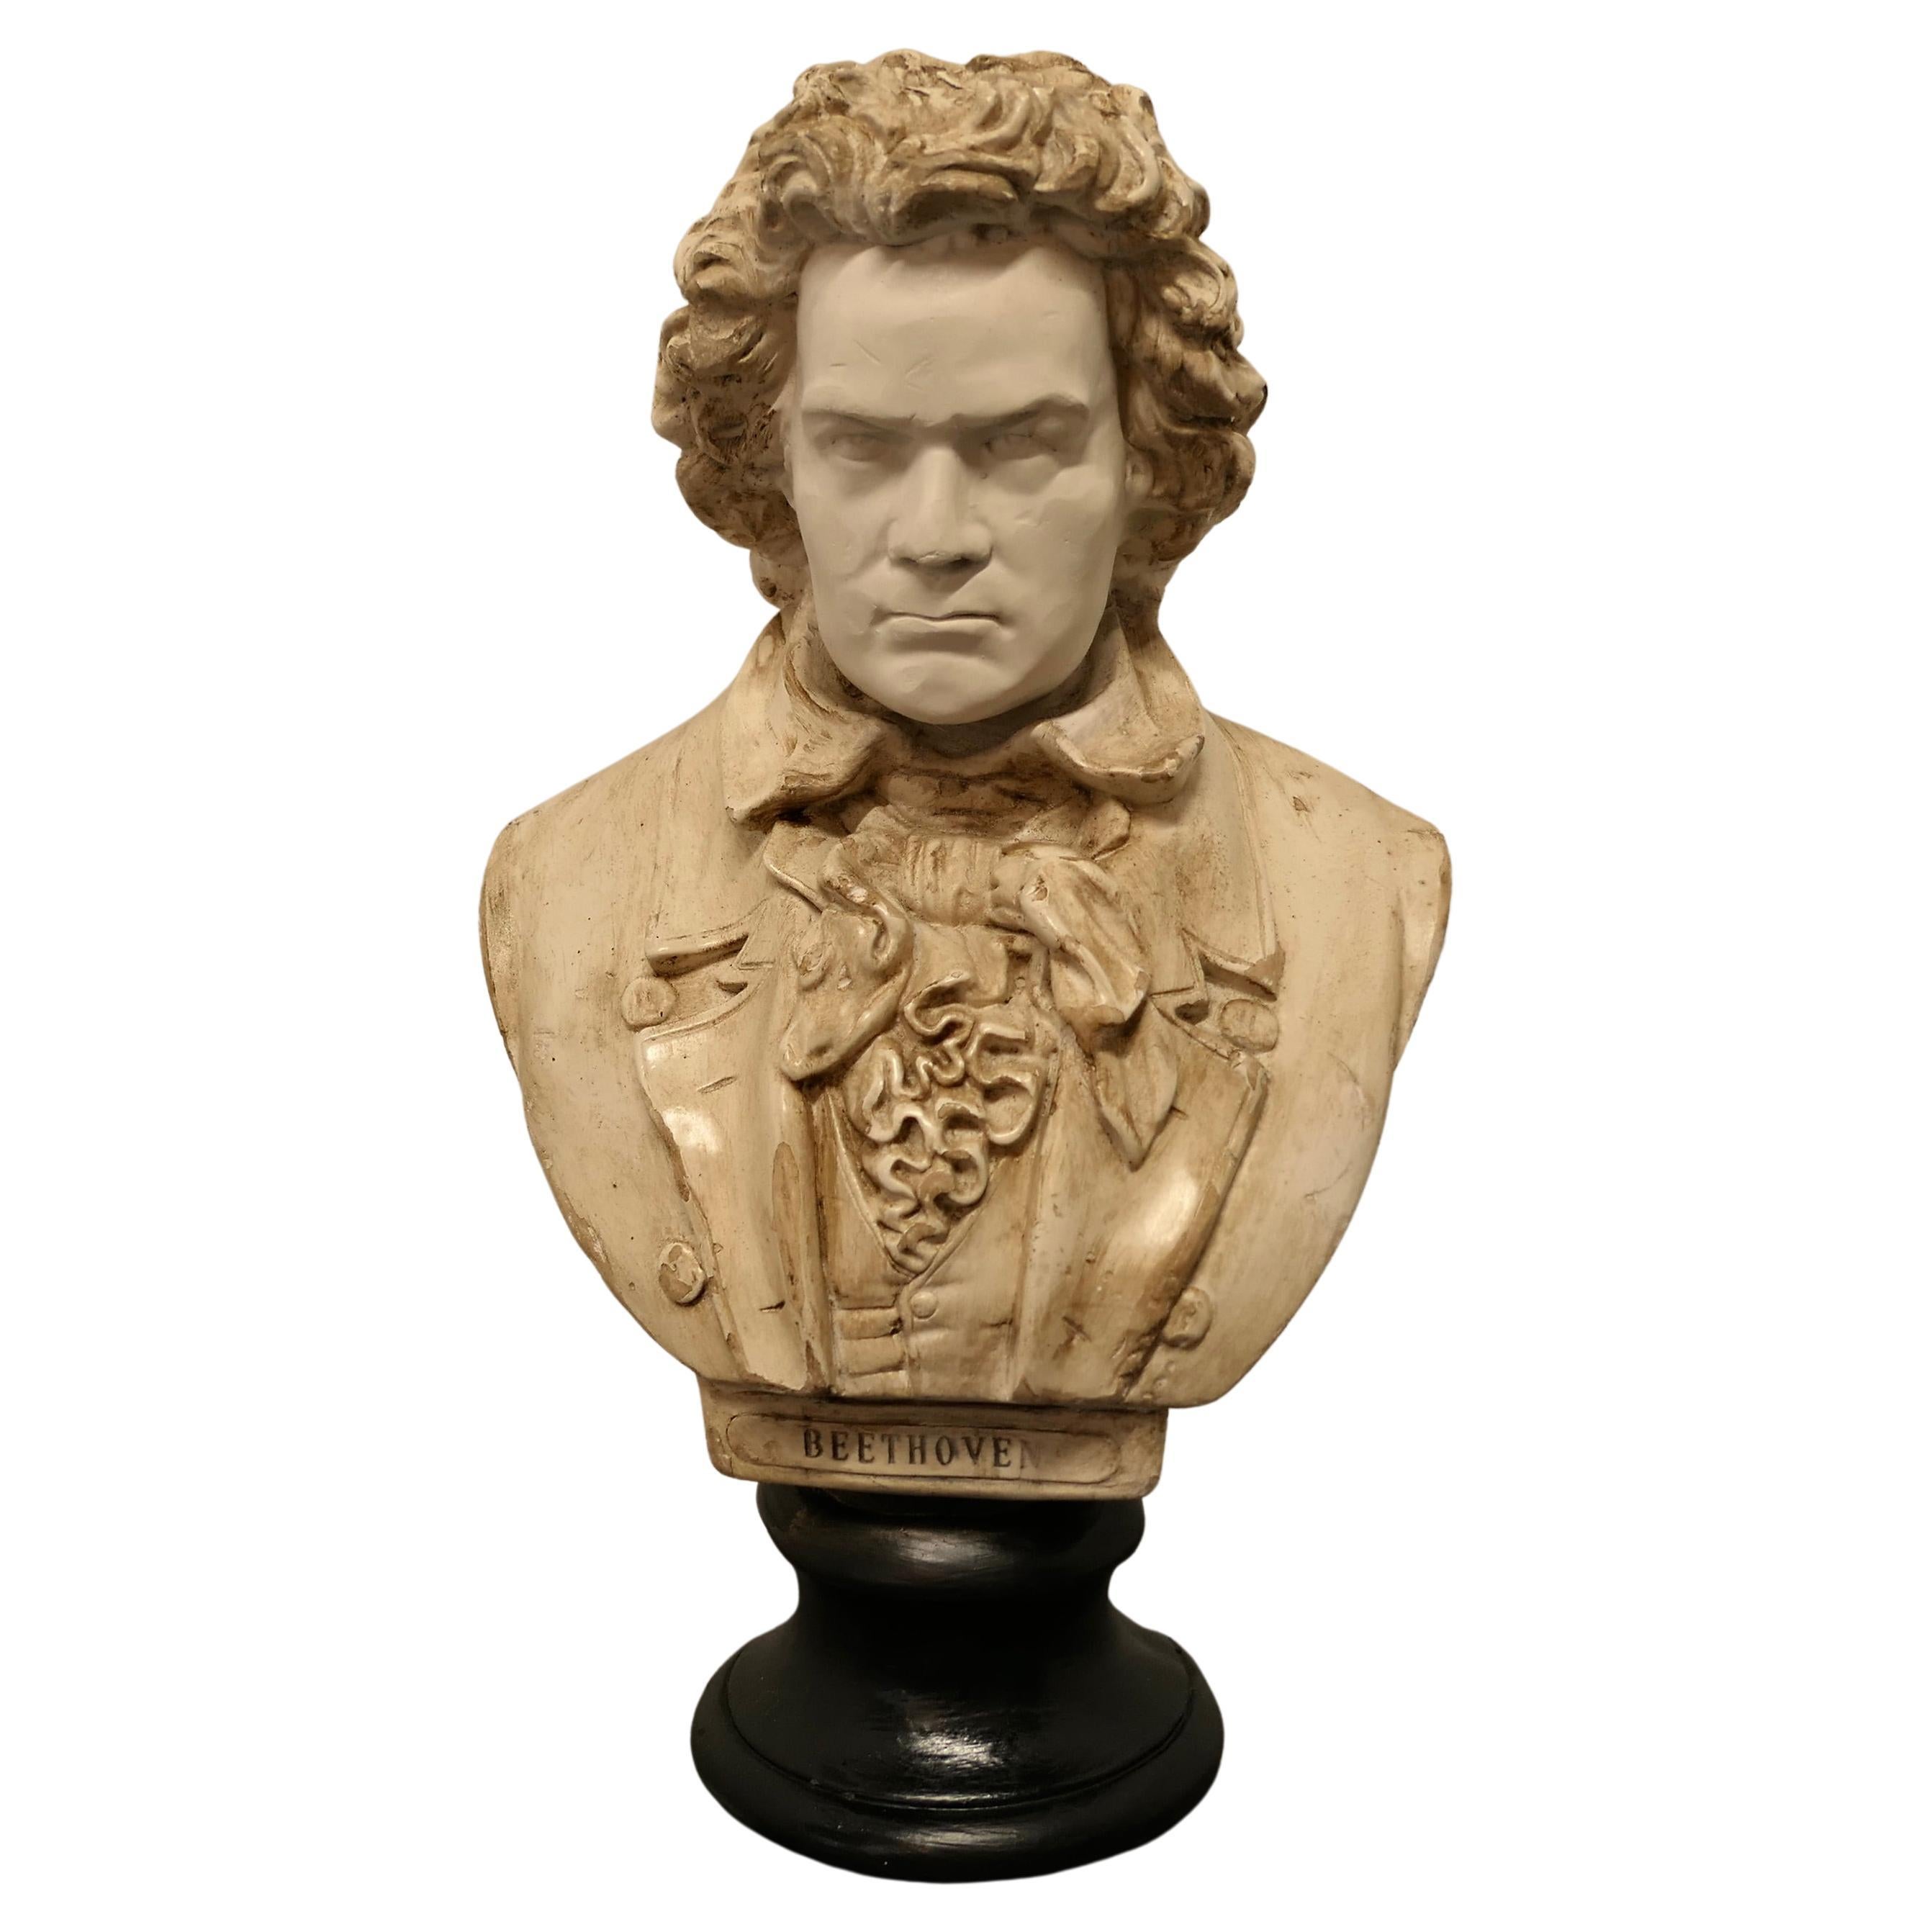 Busto bien envejecido de Ludwig van Beethoven